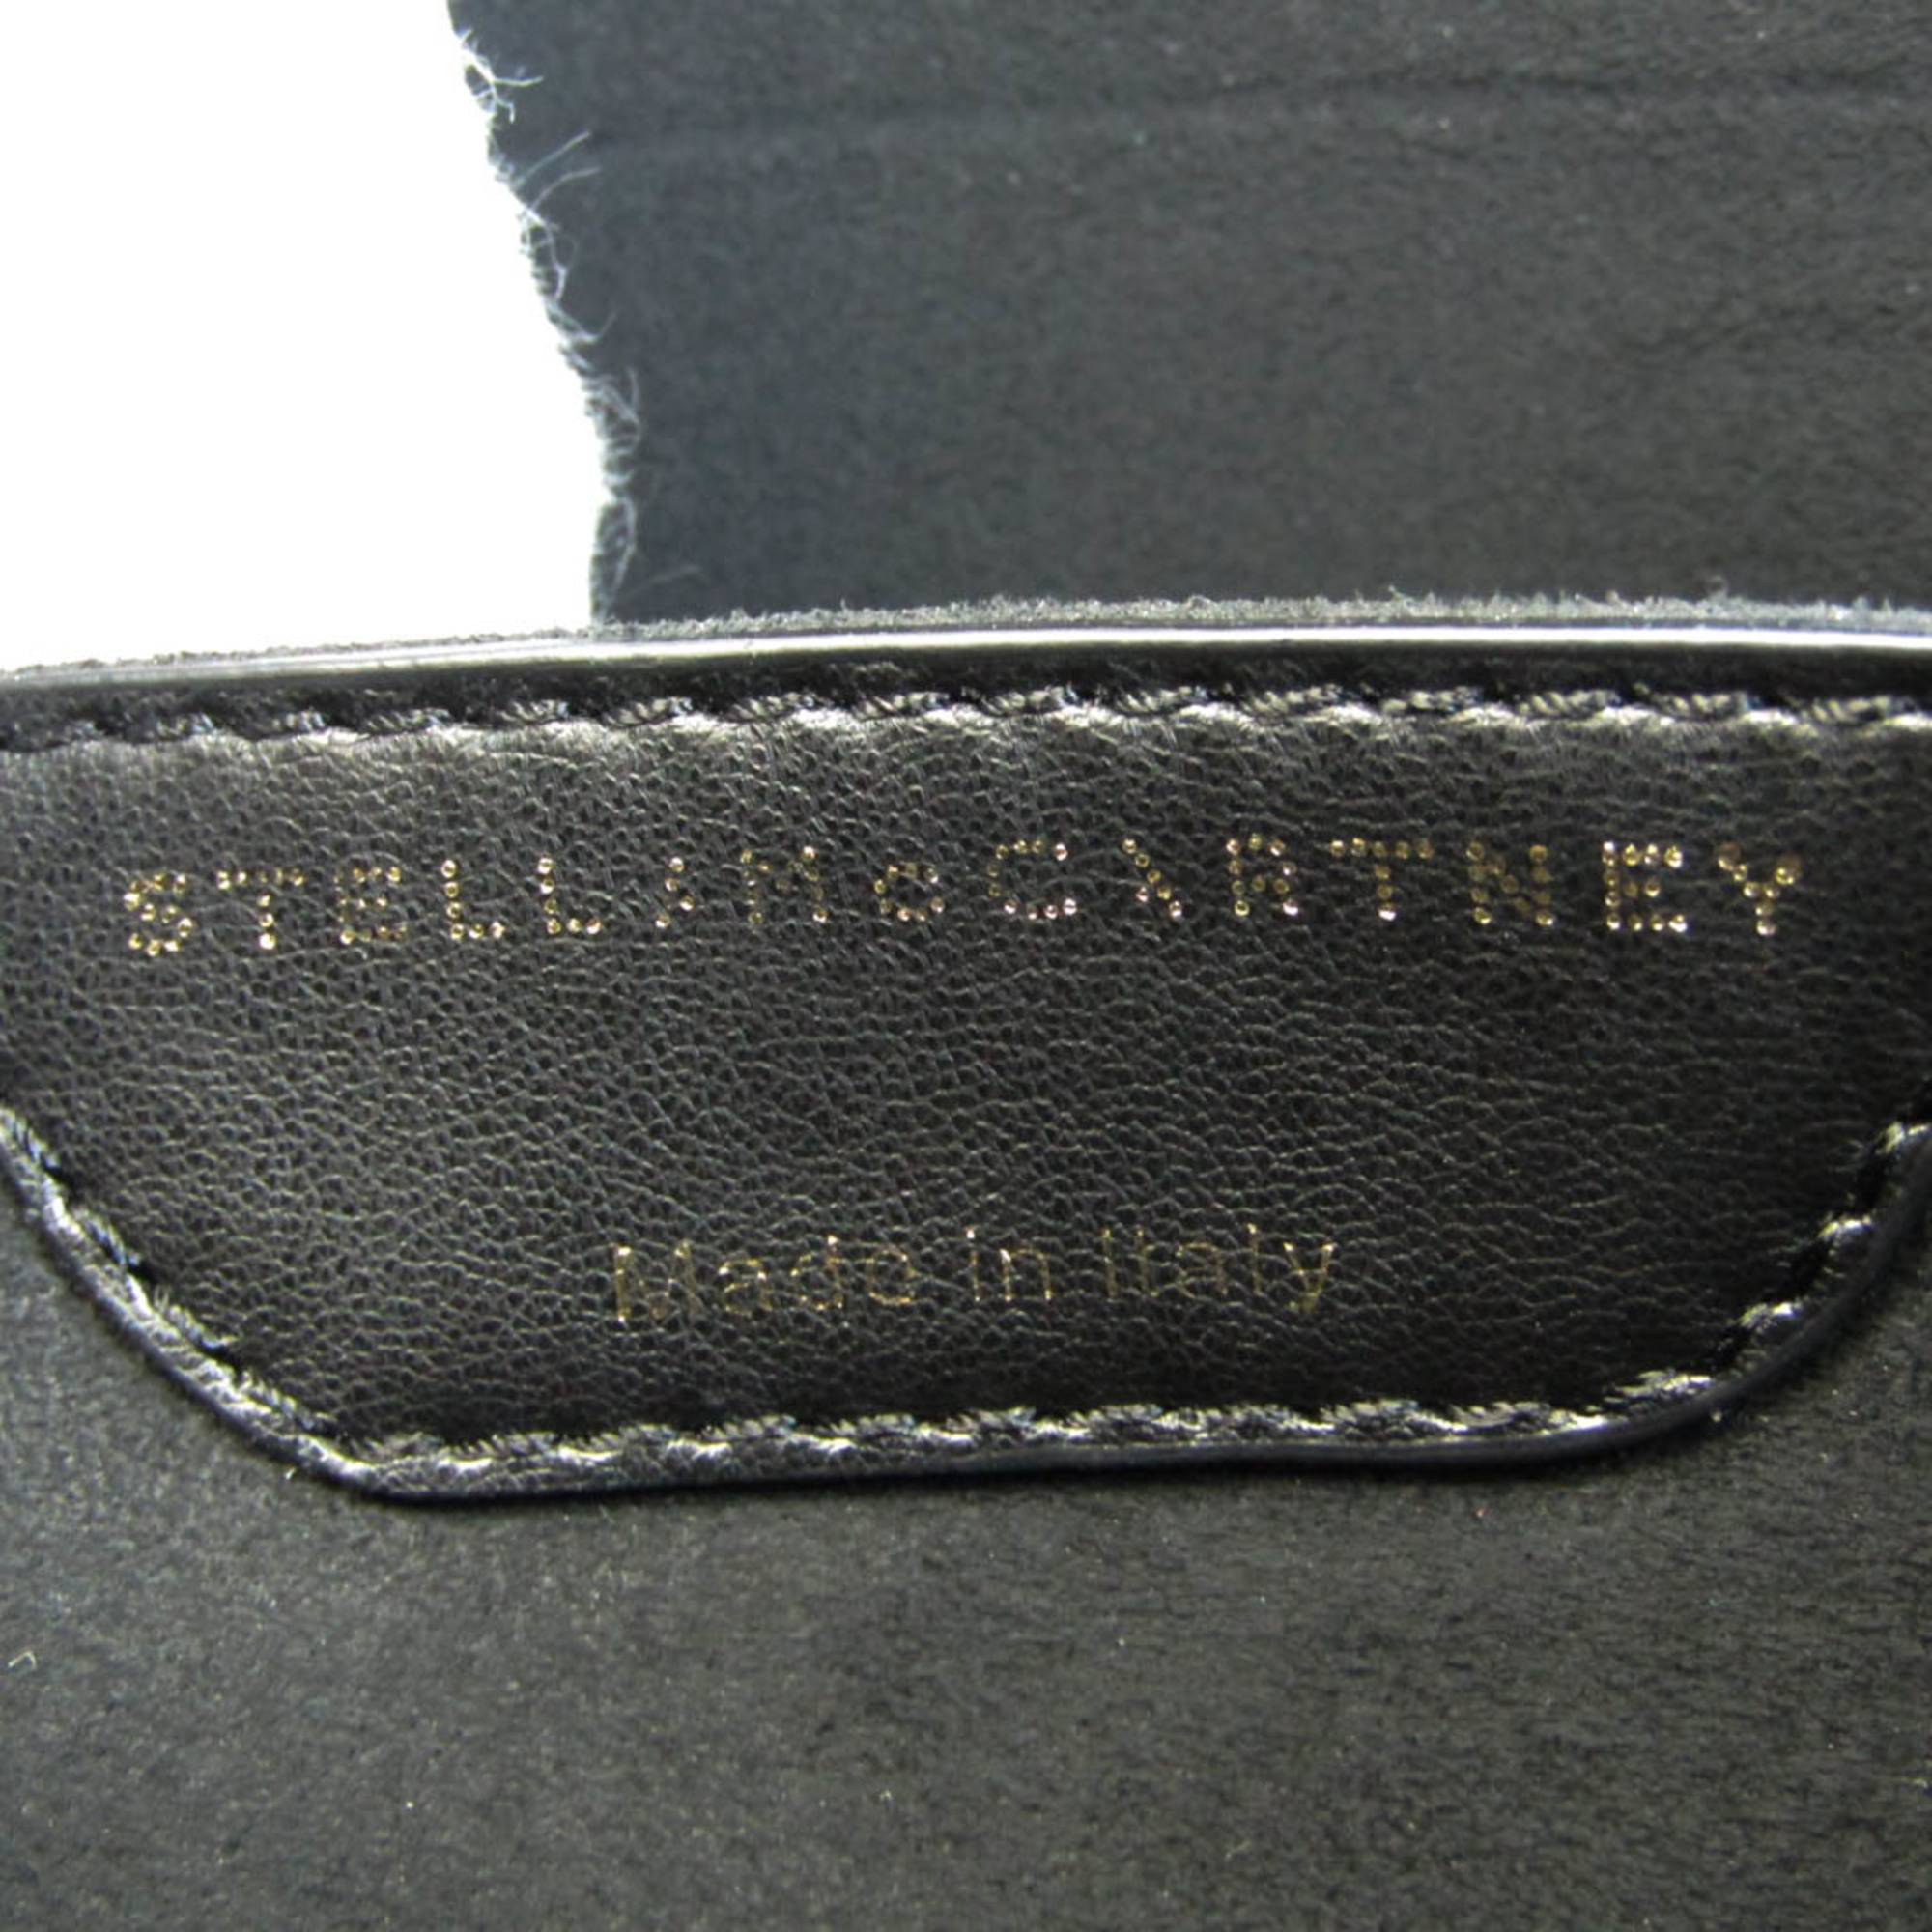 ステラ・マッカートニー(Stella McCartney) スーパーヒーローズ ユニセックス 合成皮革 クラッチバッグ ブラック